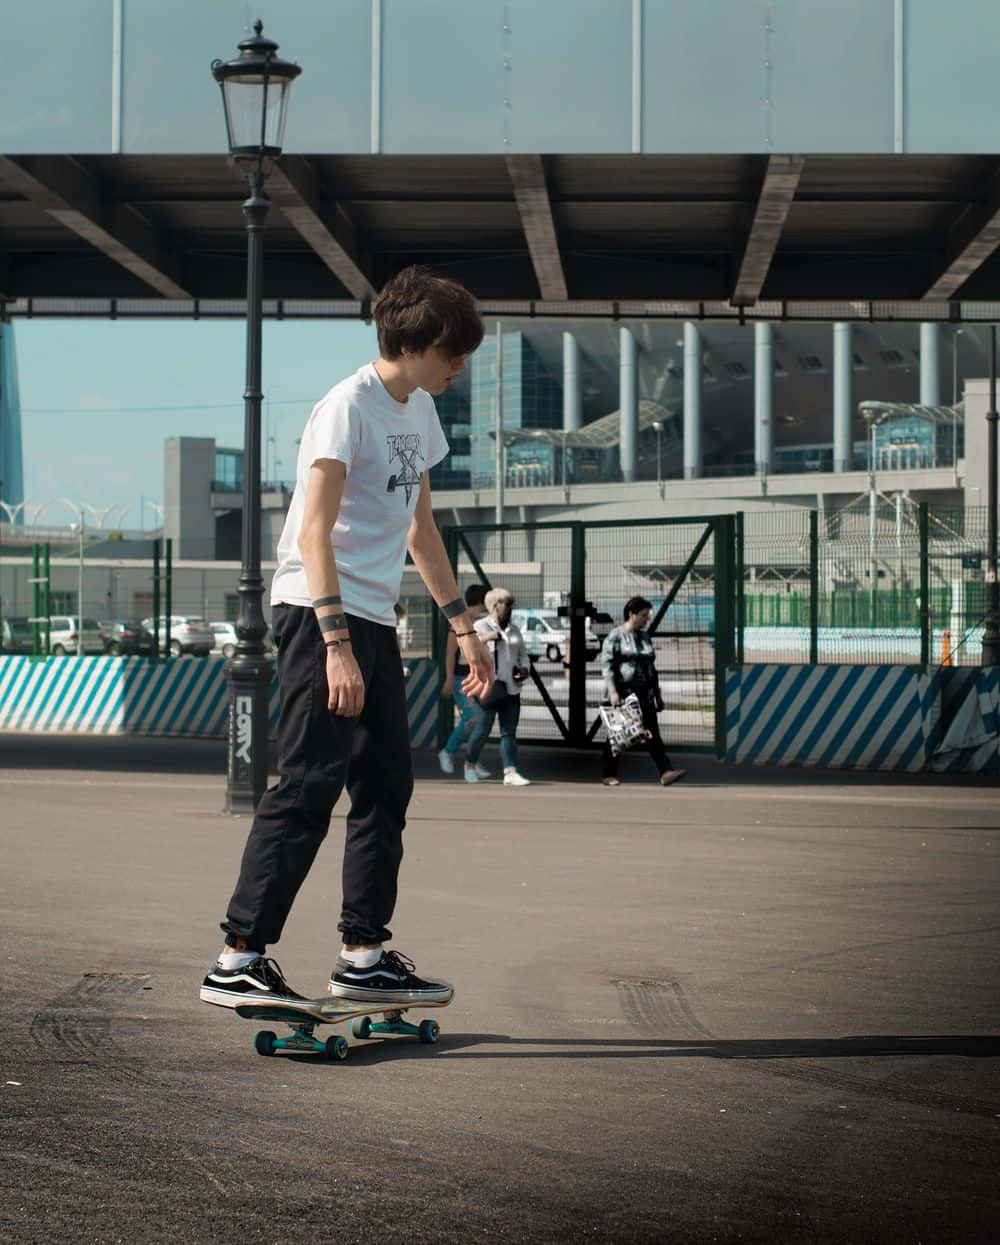 Skateboardingcon Stile